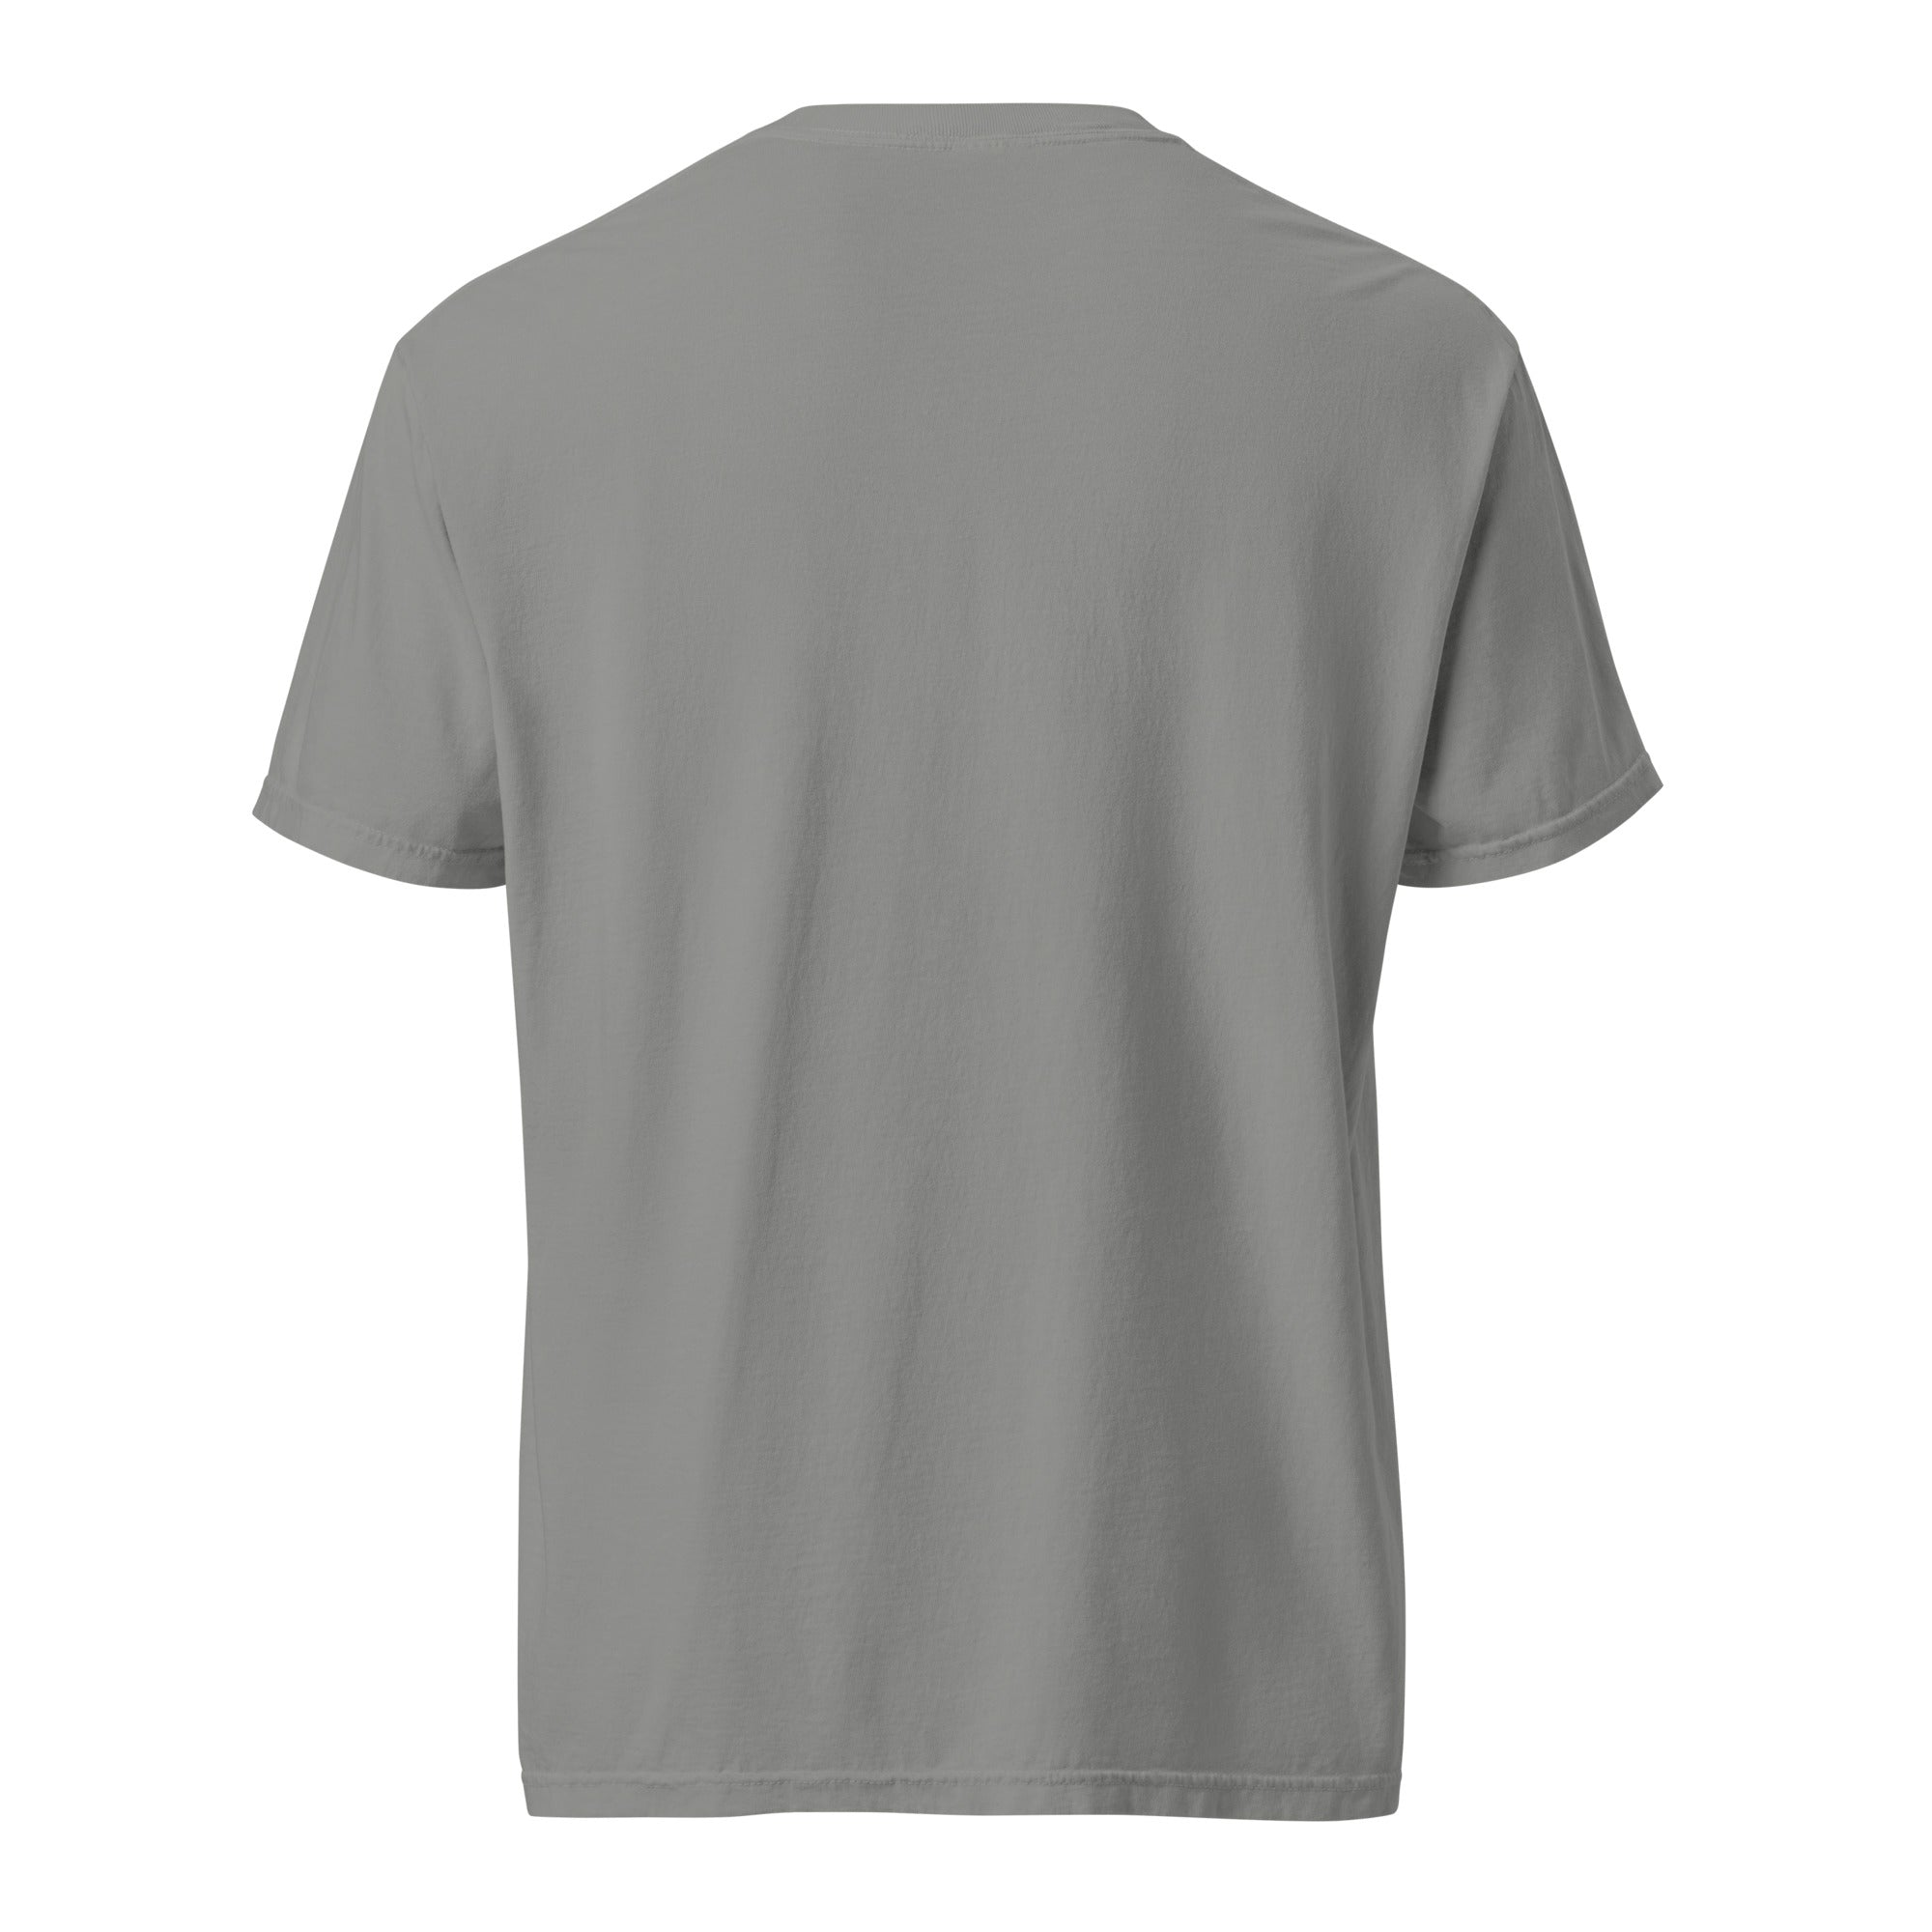 GMLA Unisex garment-dyed heavyweight t-shirt